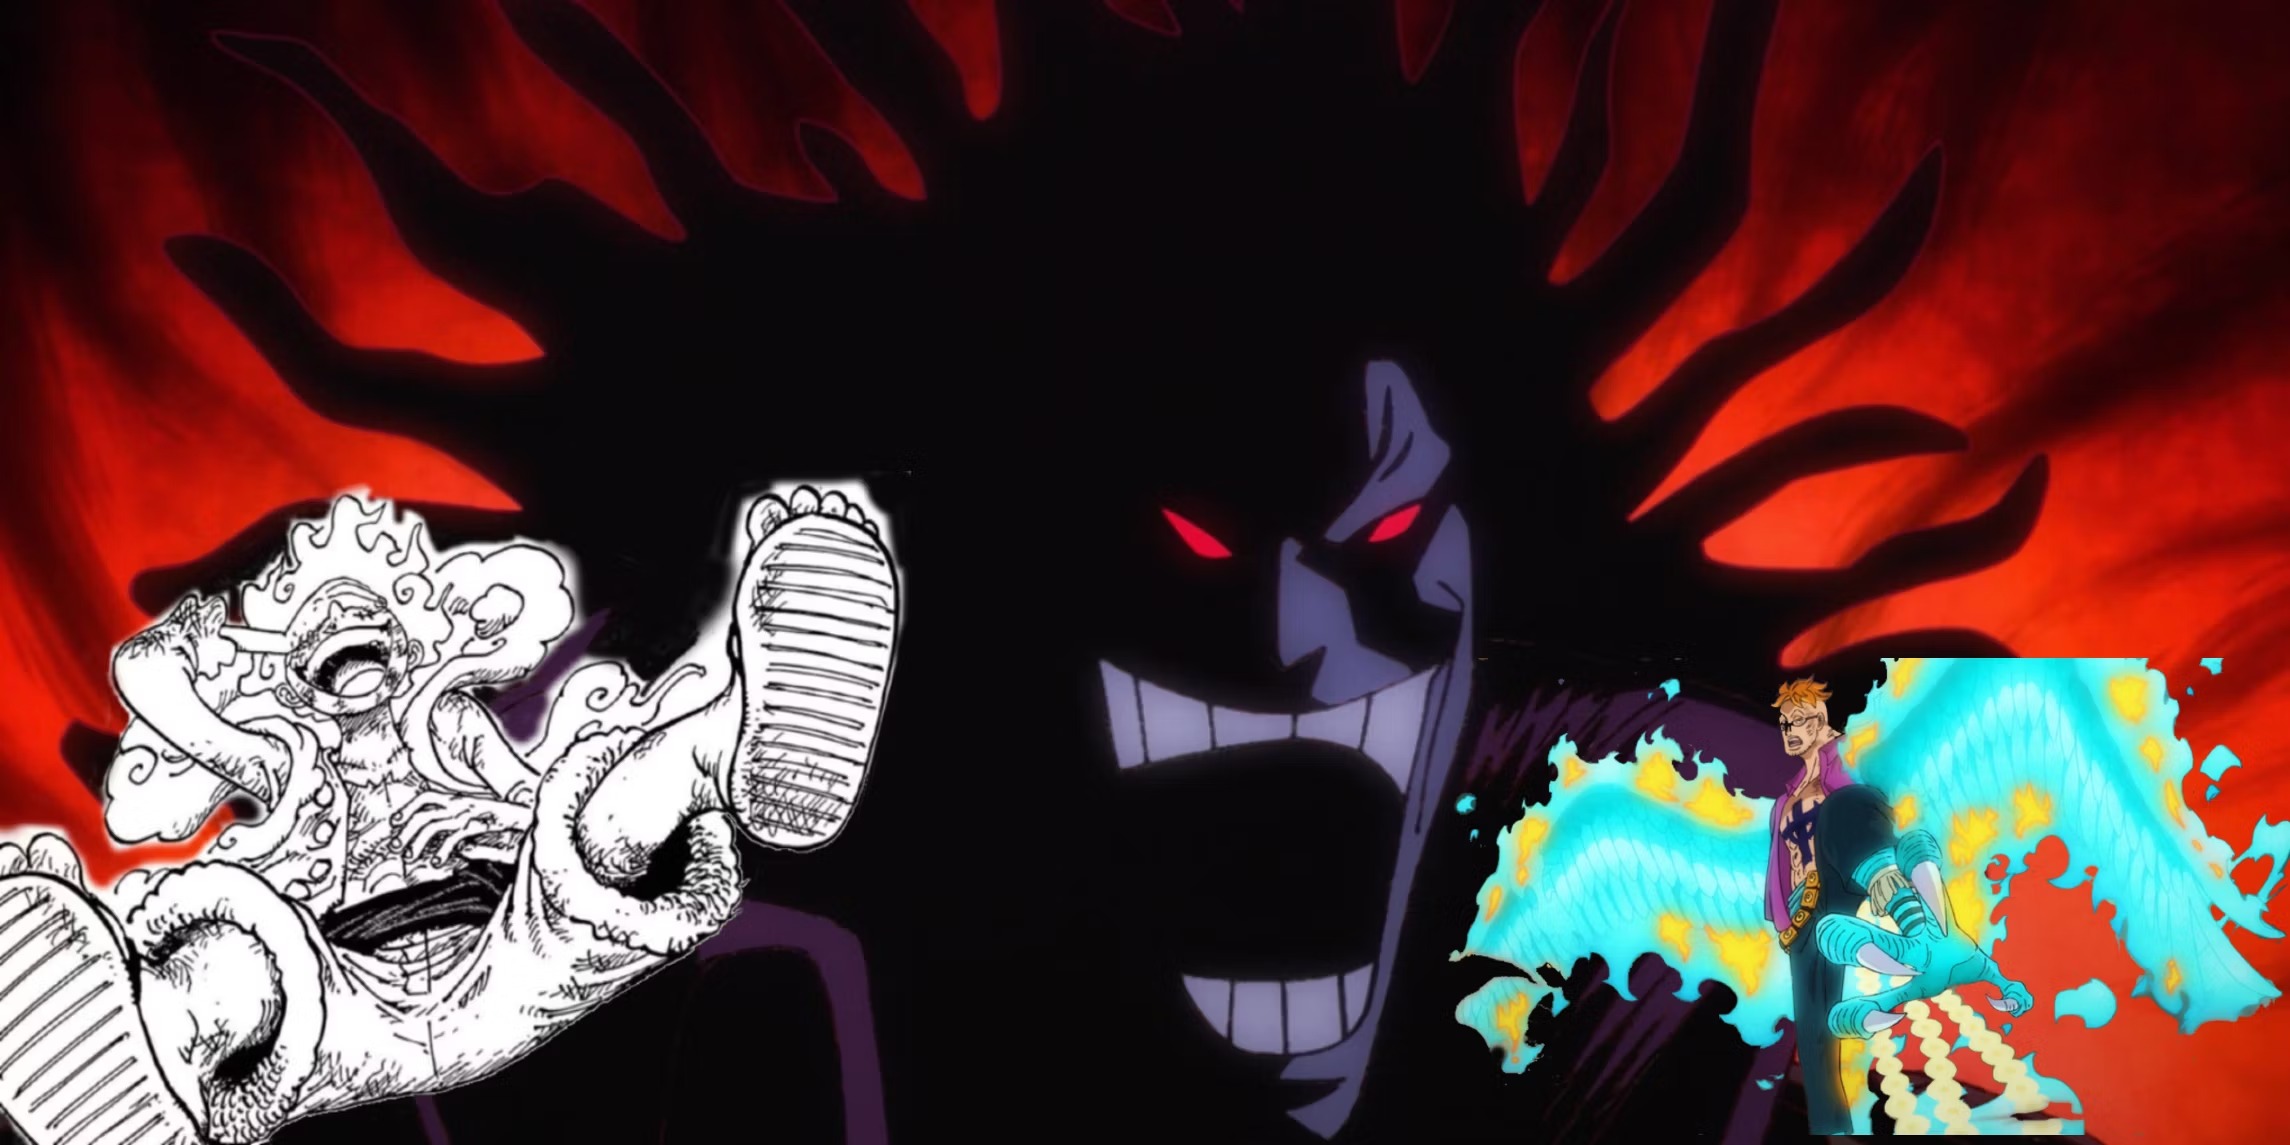 Teoria de One Piece sugere que todas as Zoans míticas vieram de God